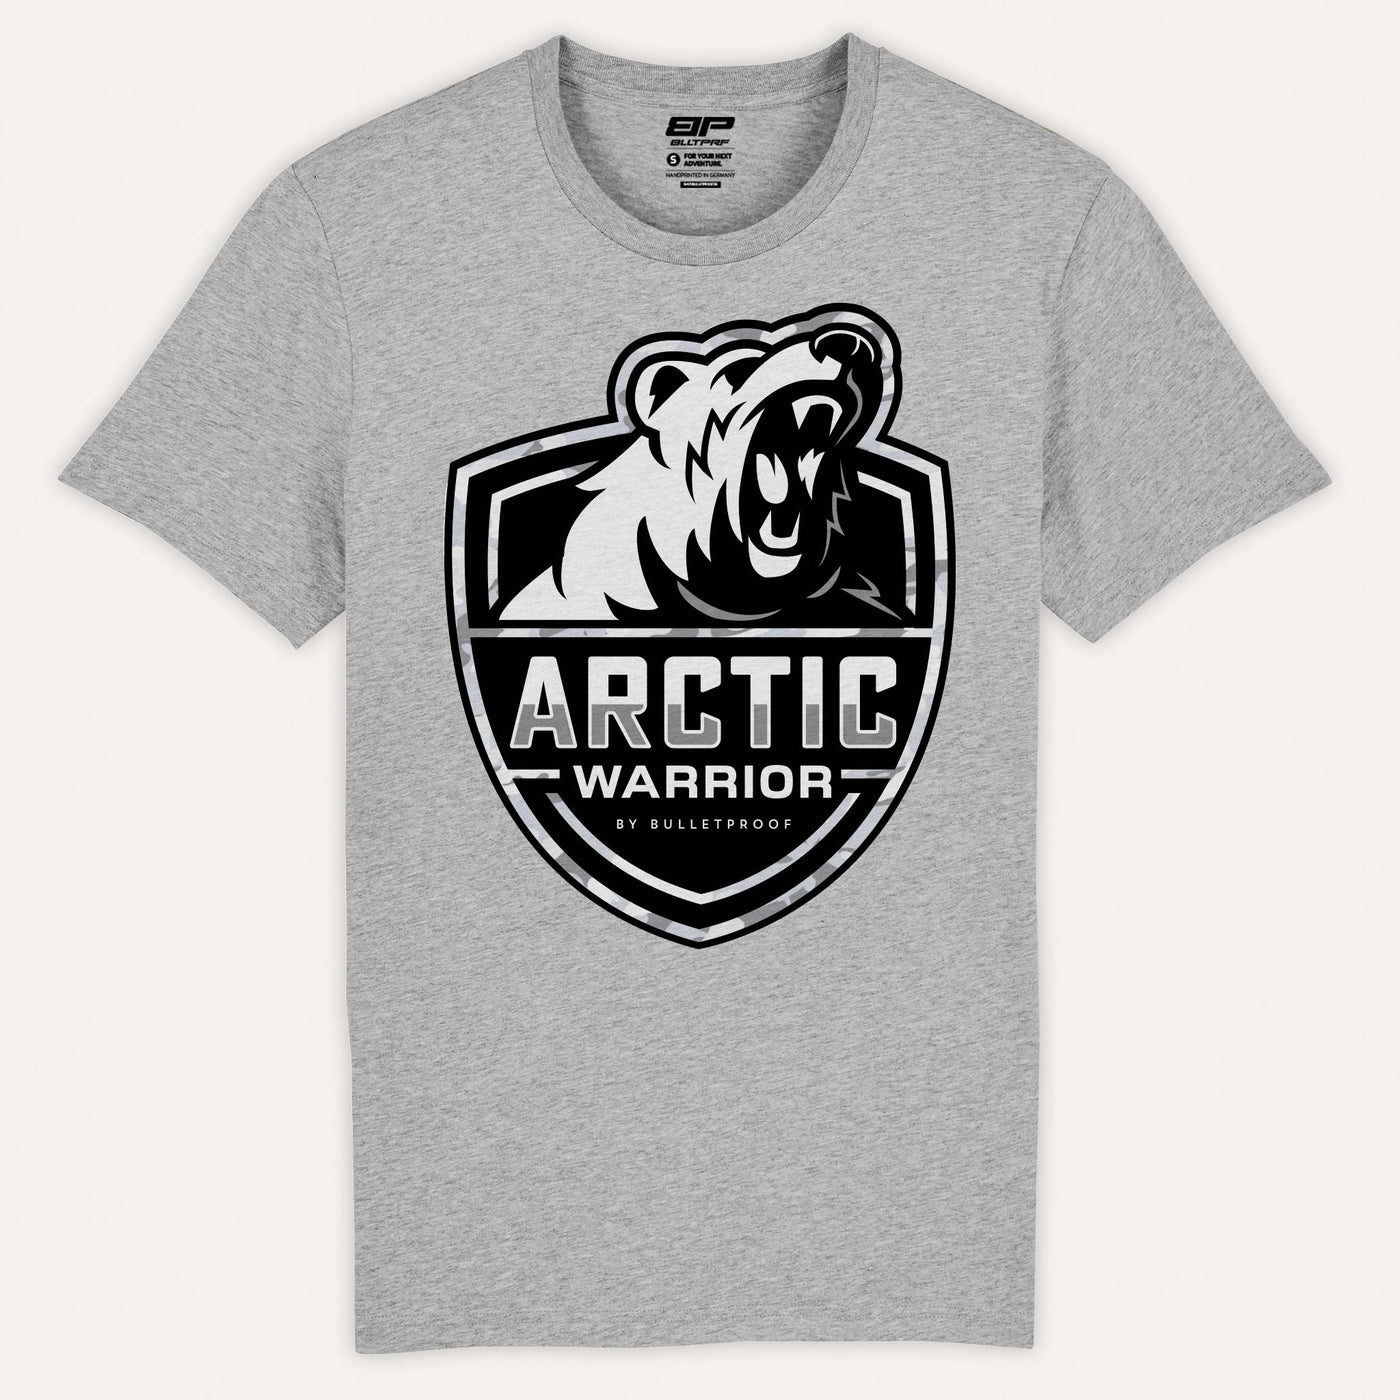 Bulletproof Arctic Warrior T-Shirt